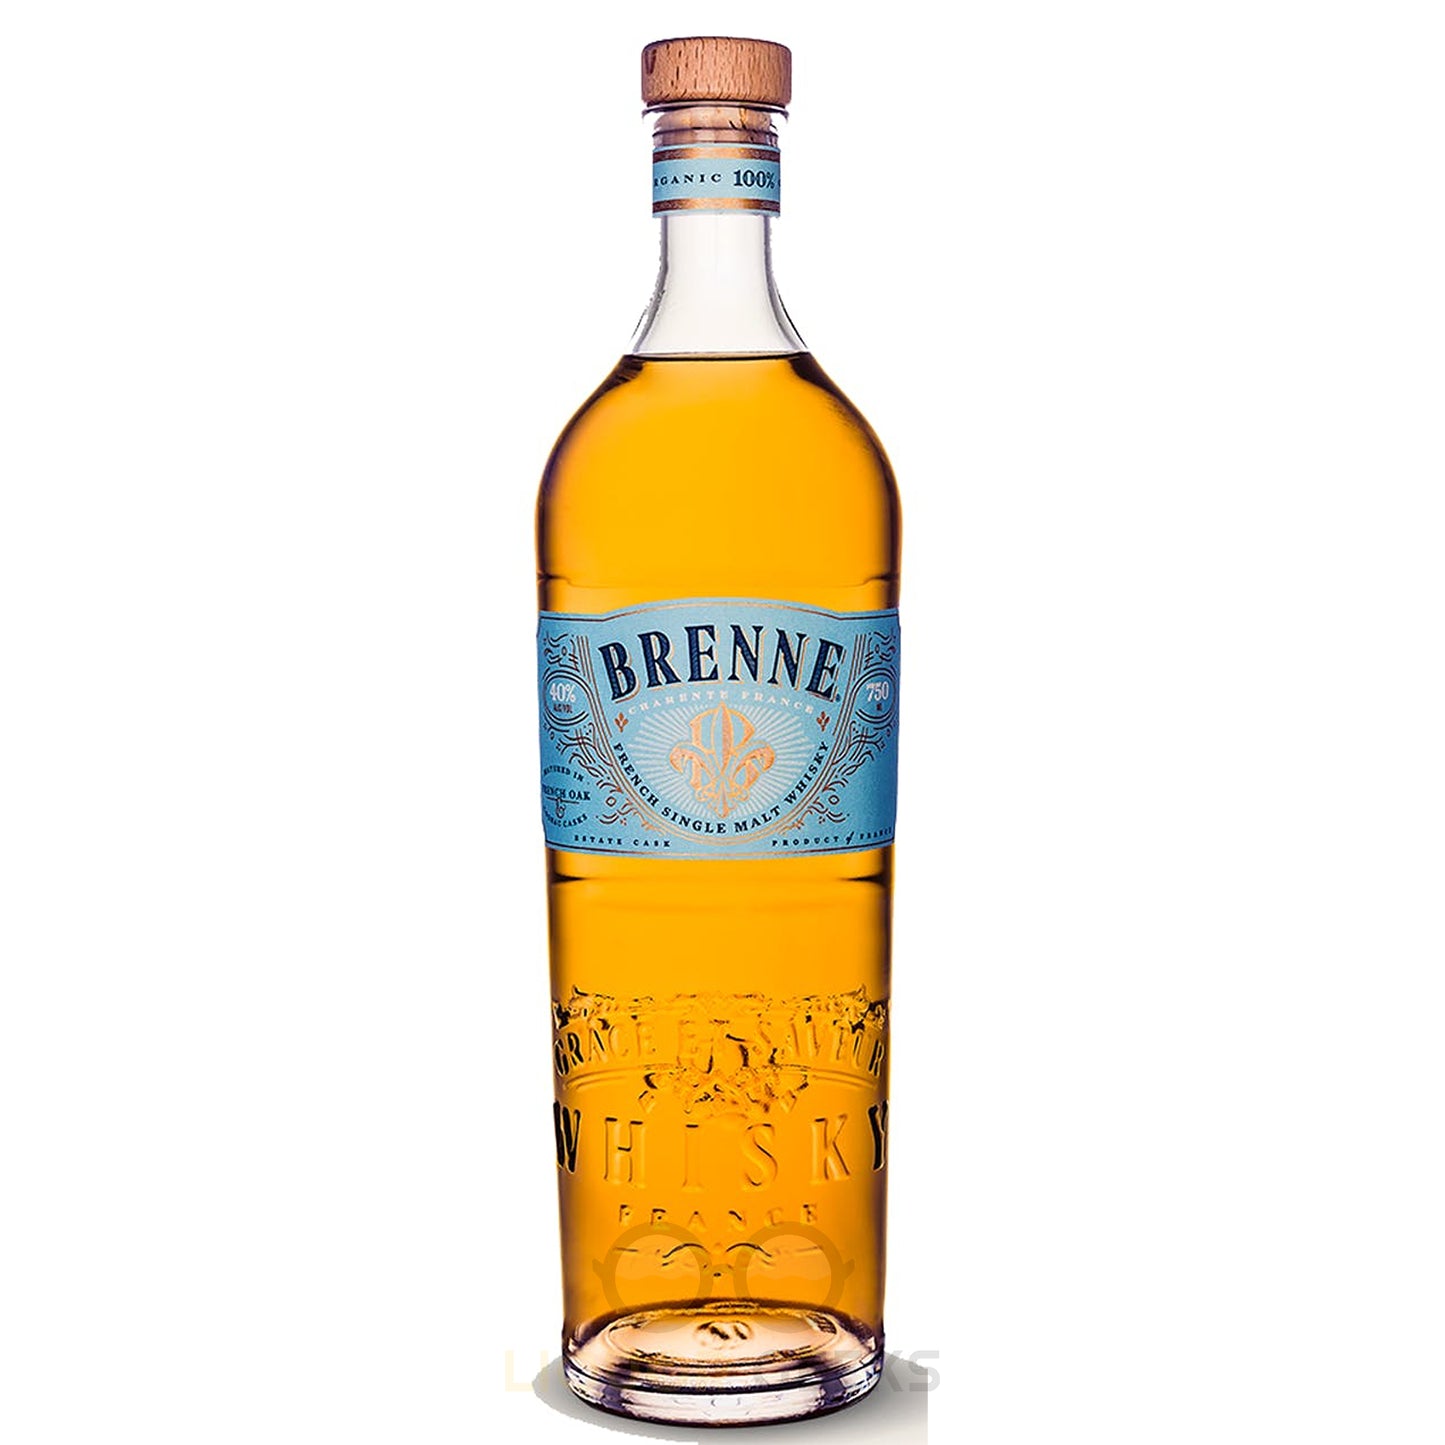 Brenne French Single Malt Whisky - Liquor Geeks